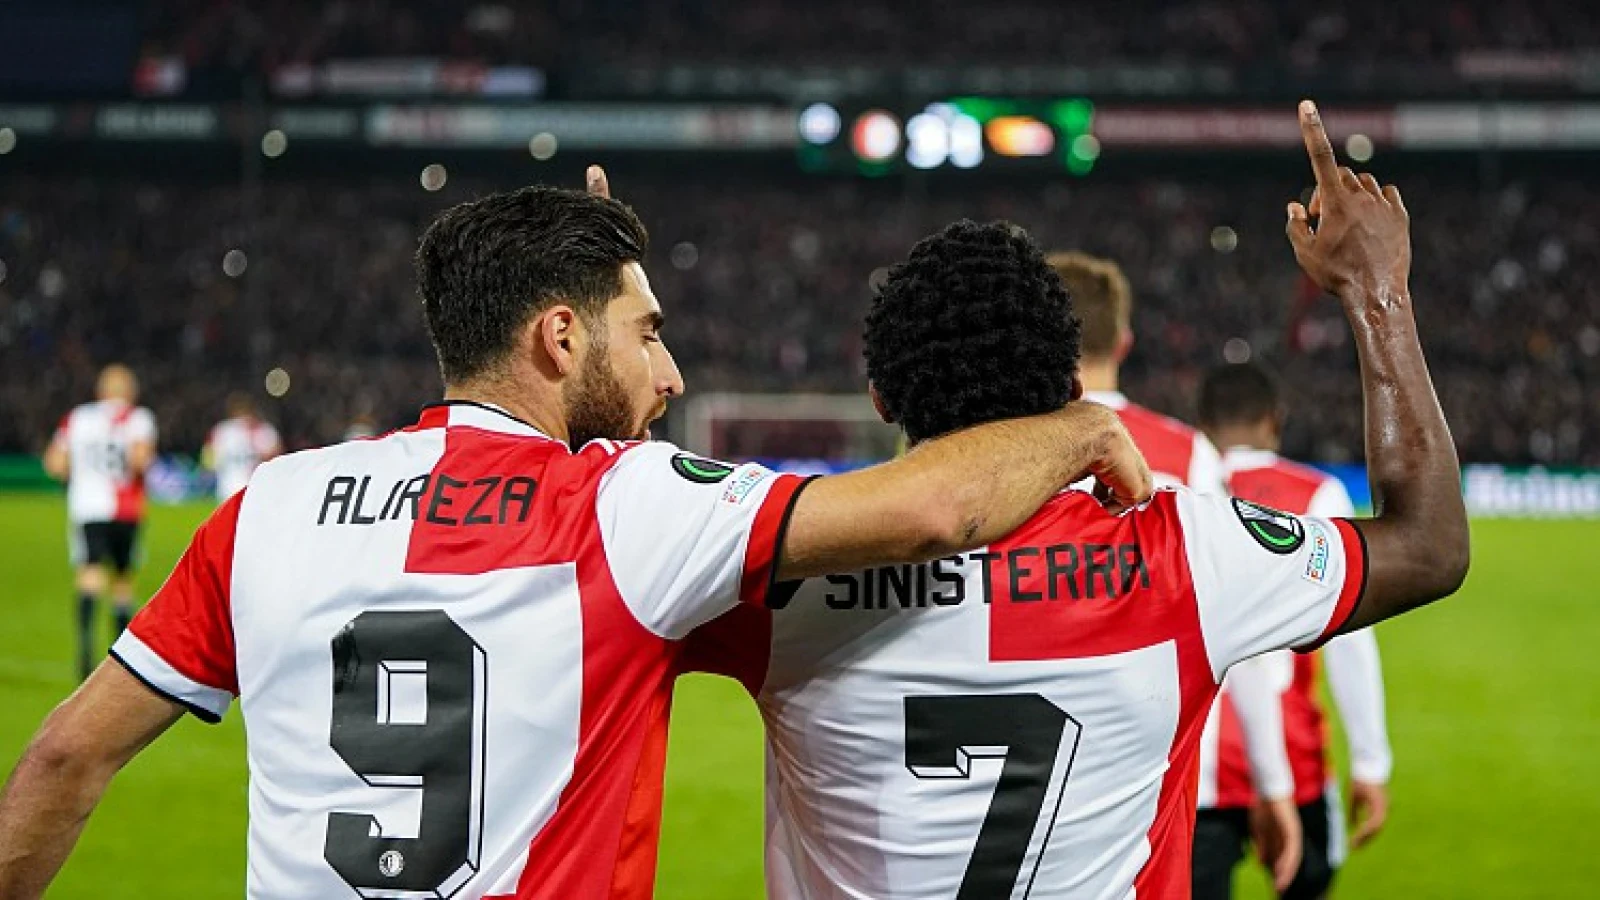 De kranten: 'Feyenoord zet grote stap in richting overwintering' 